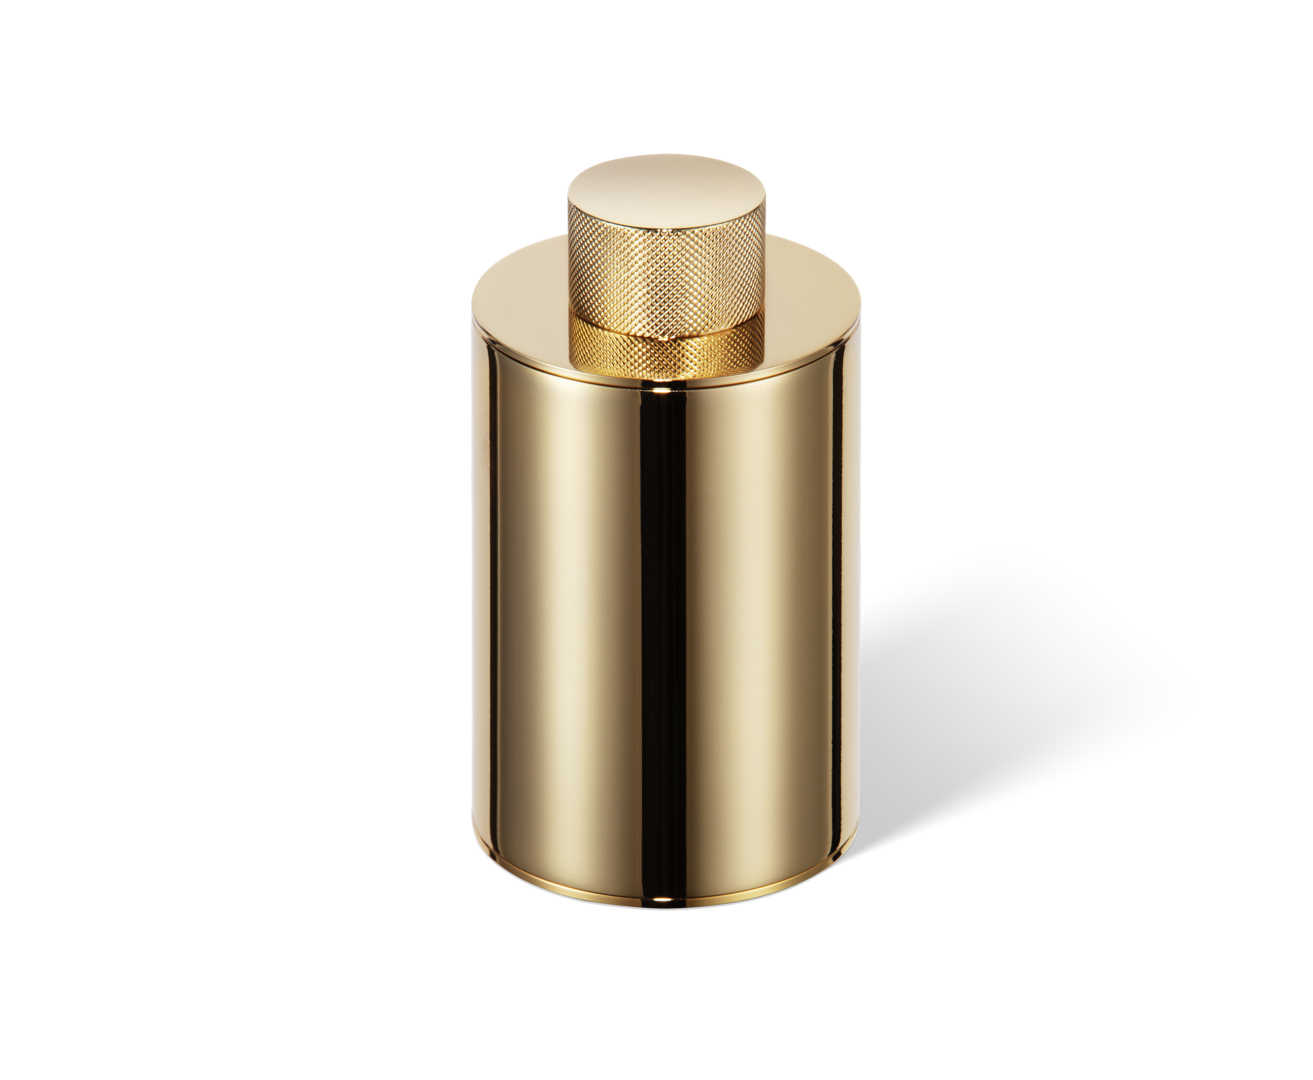 Luxuriöser Rasiererhalter und Zahnbürstenhalter in Gold 24 Karat von Decor Walther, verleiht jedem Badezimmer einen Hauch von Eleganz und Luxus.